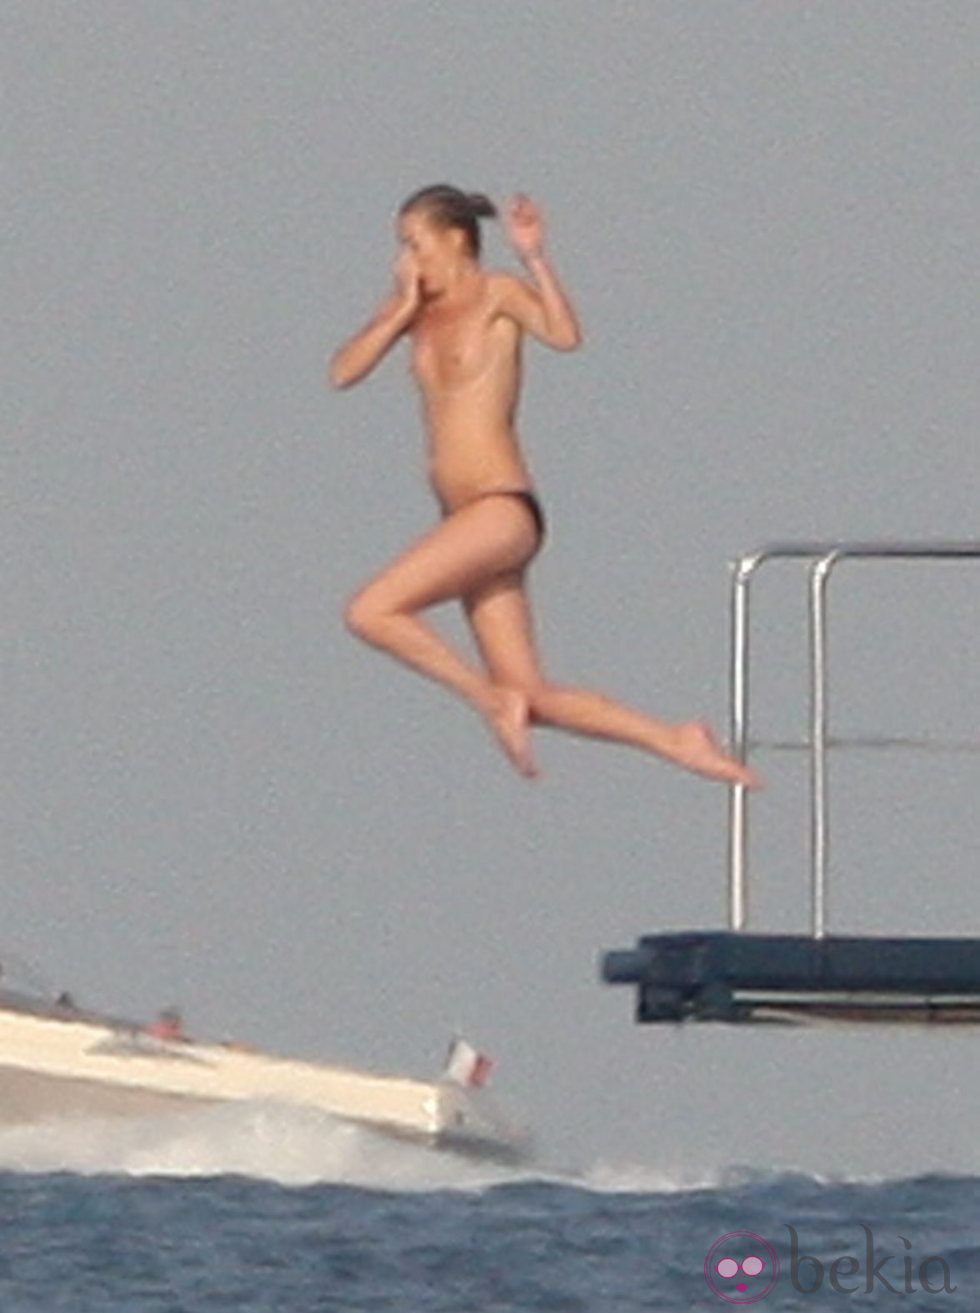 Kate Moss con el pecho desnudo